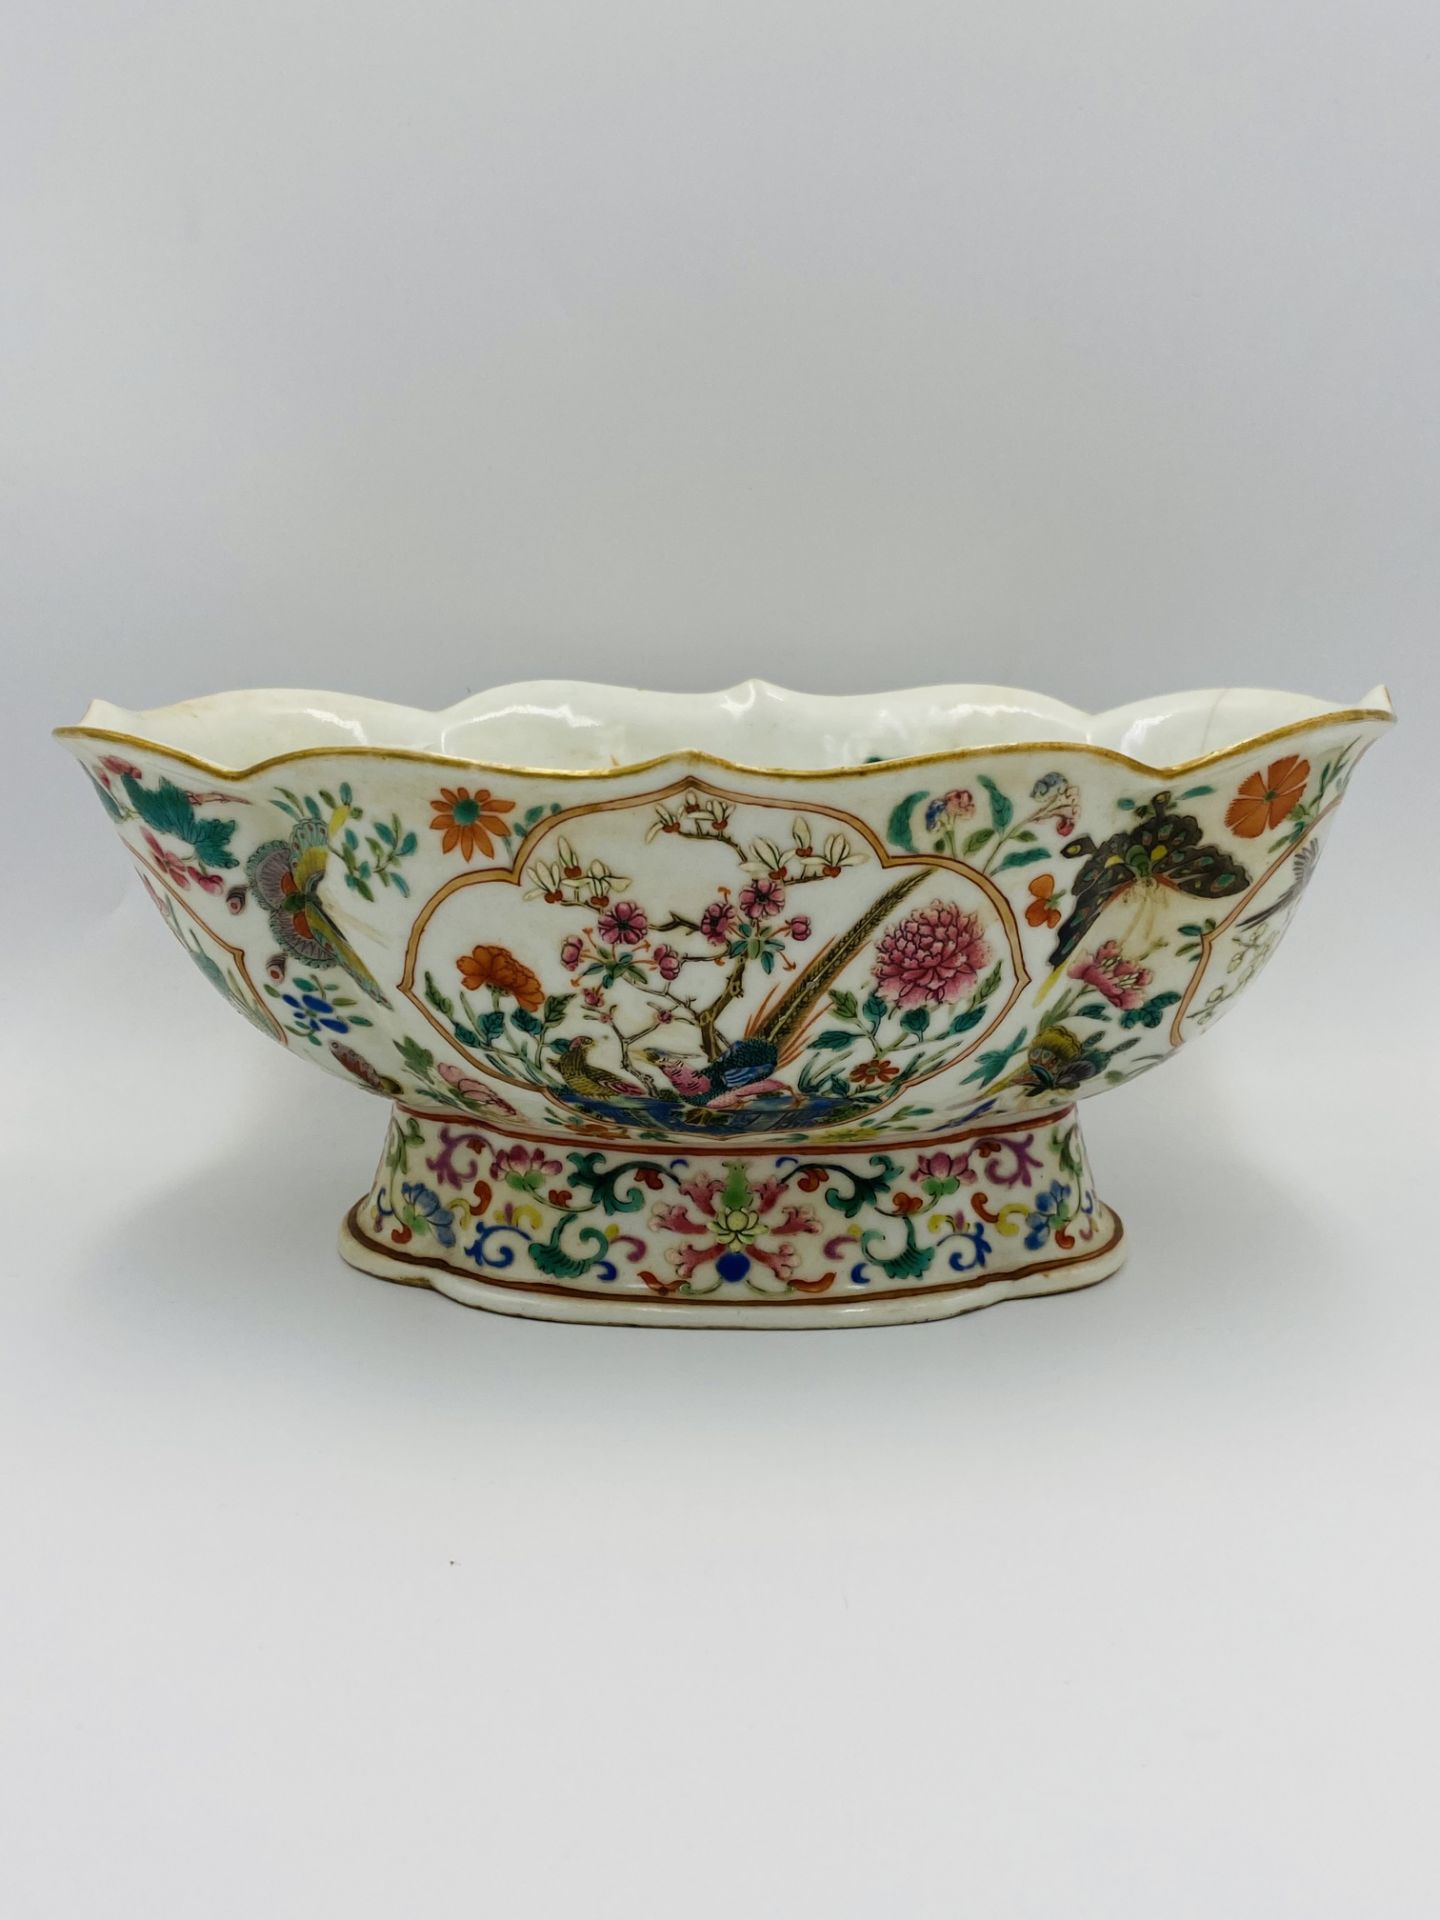 Chinese famille verte goldfish bowl - Image 7 of 7